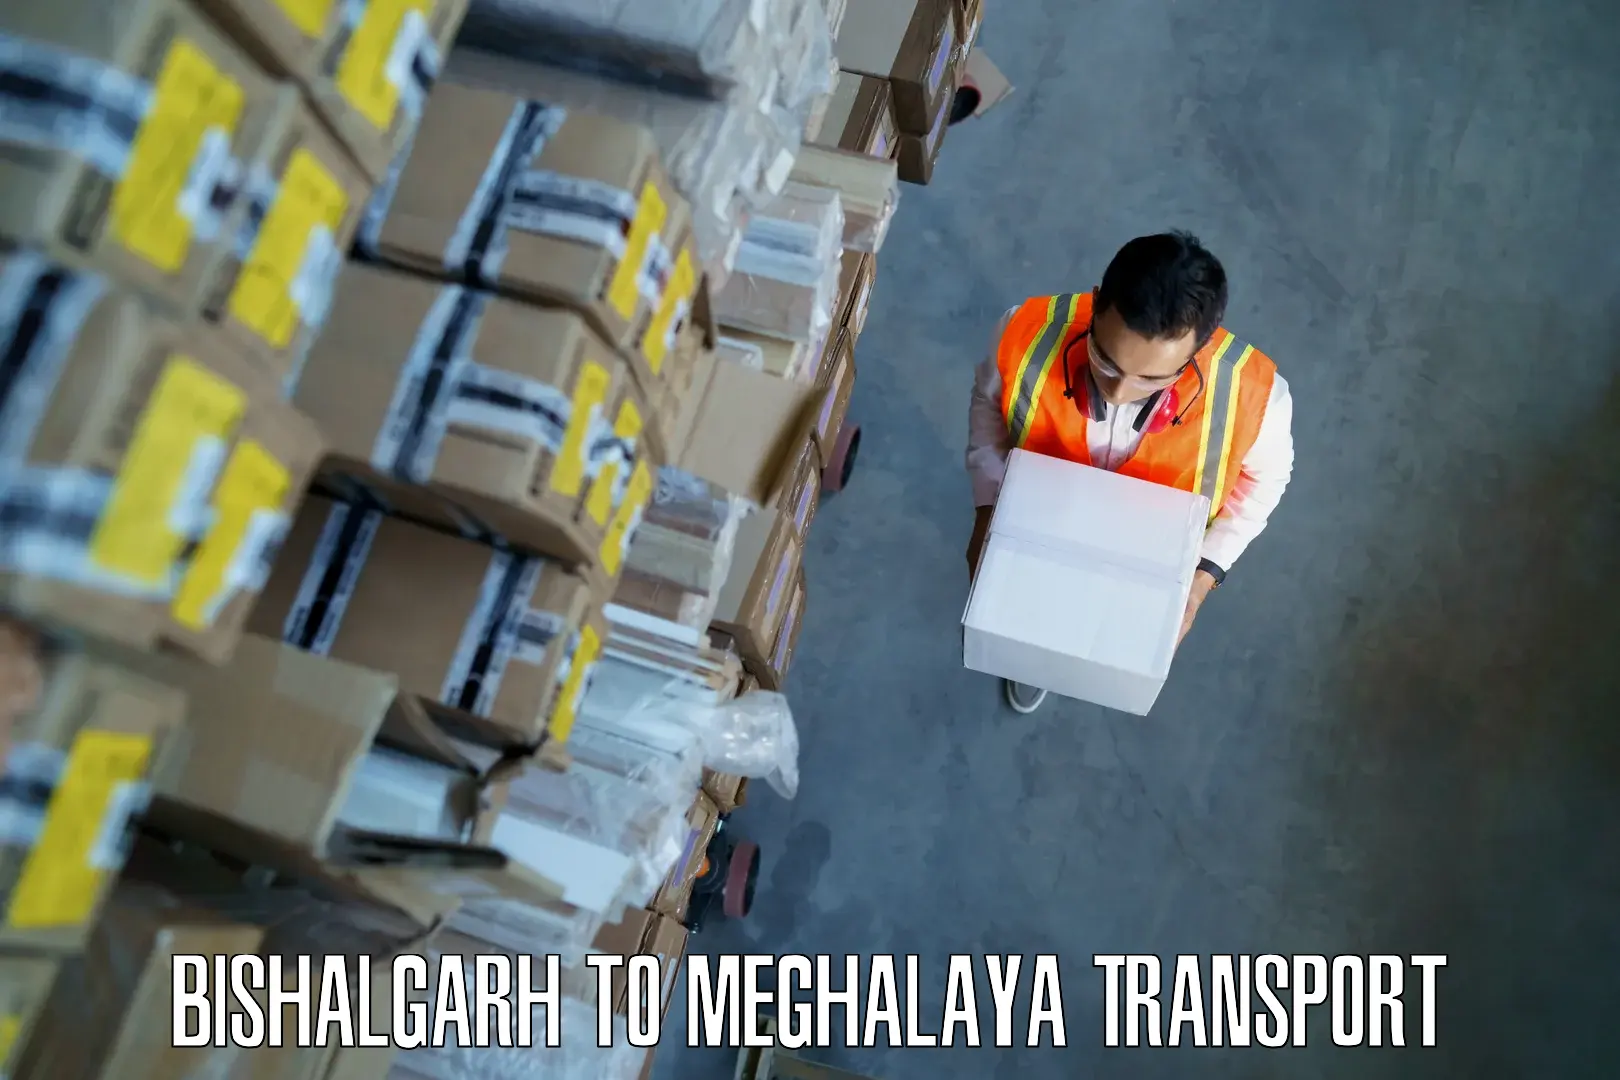 Furniture transport service Bishalgarh to Meghalaya